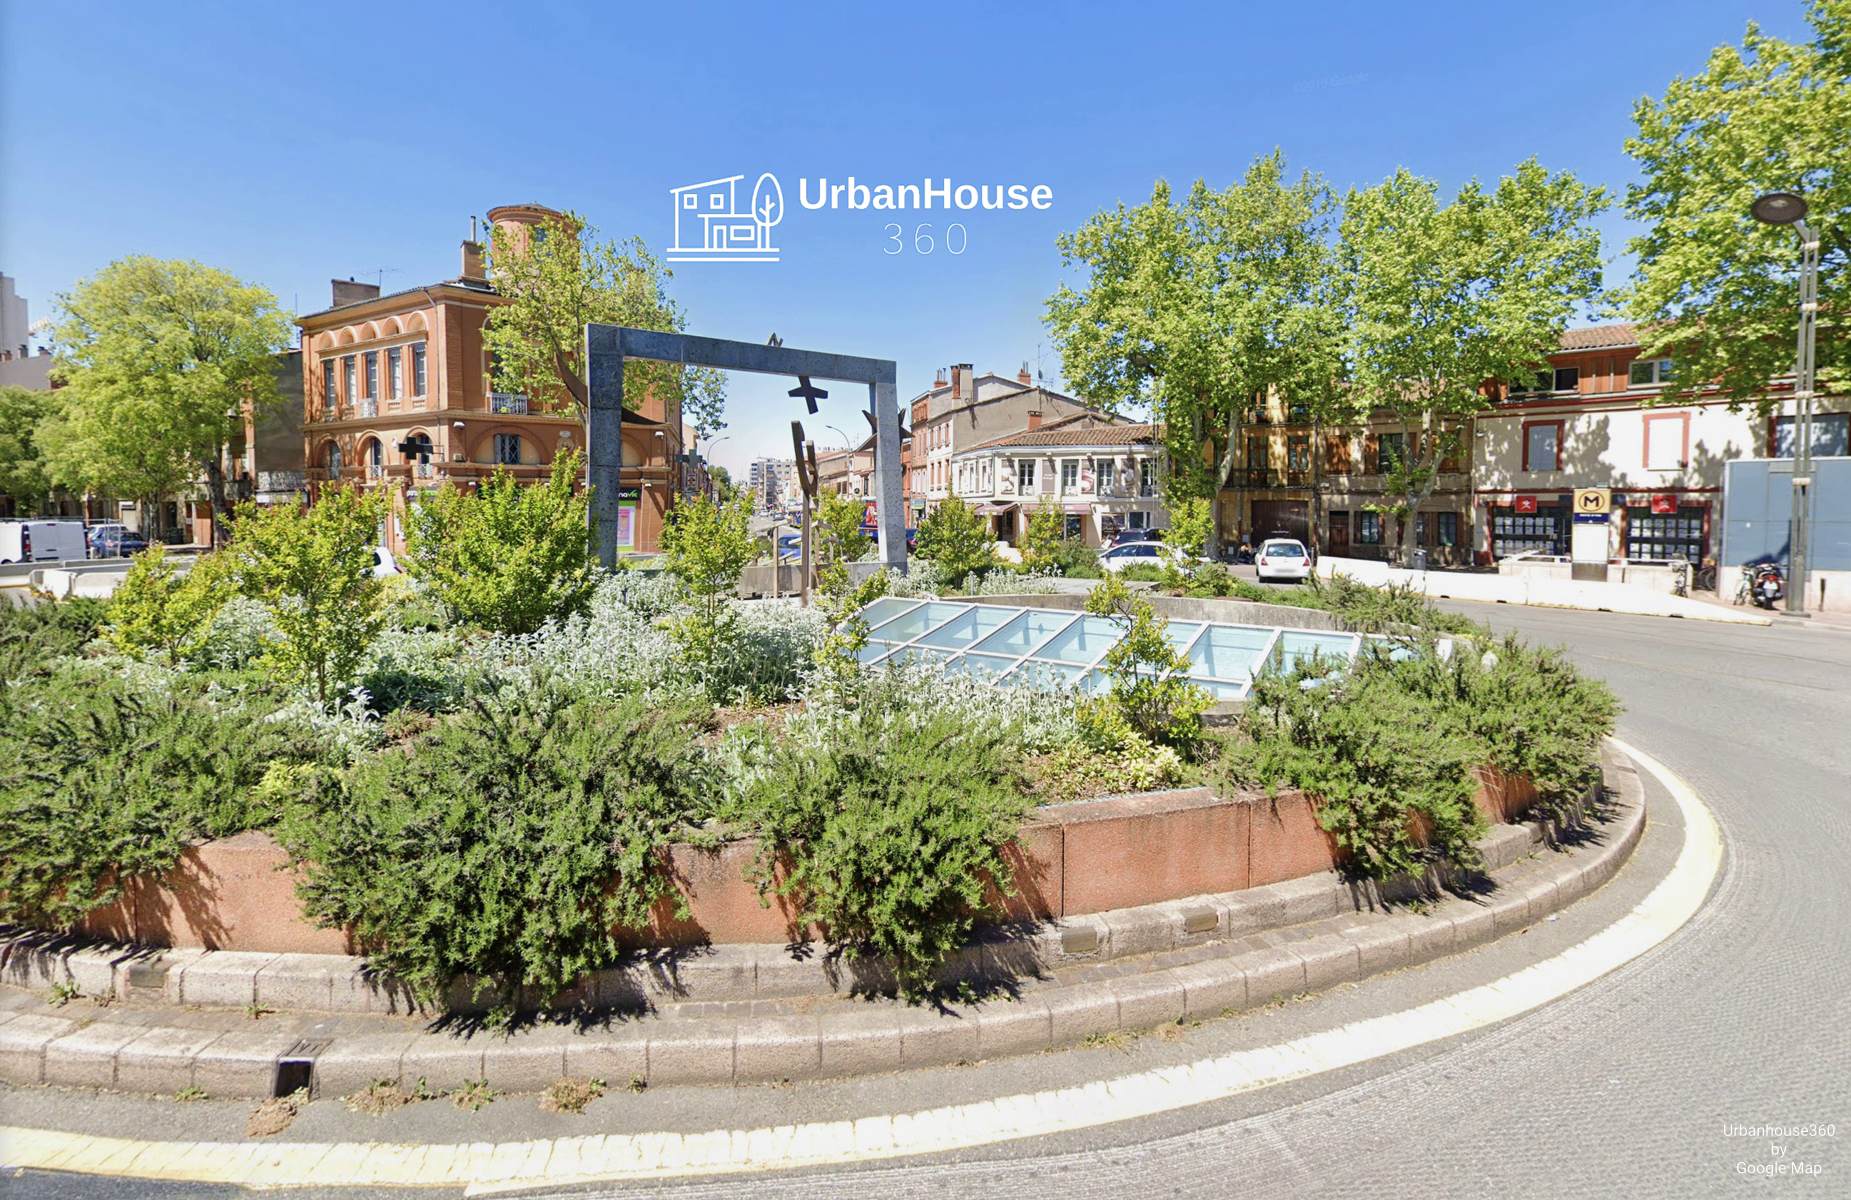 Urbanhouse360-Patte-d-oie-Toulouse